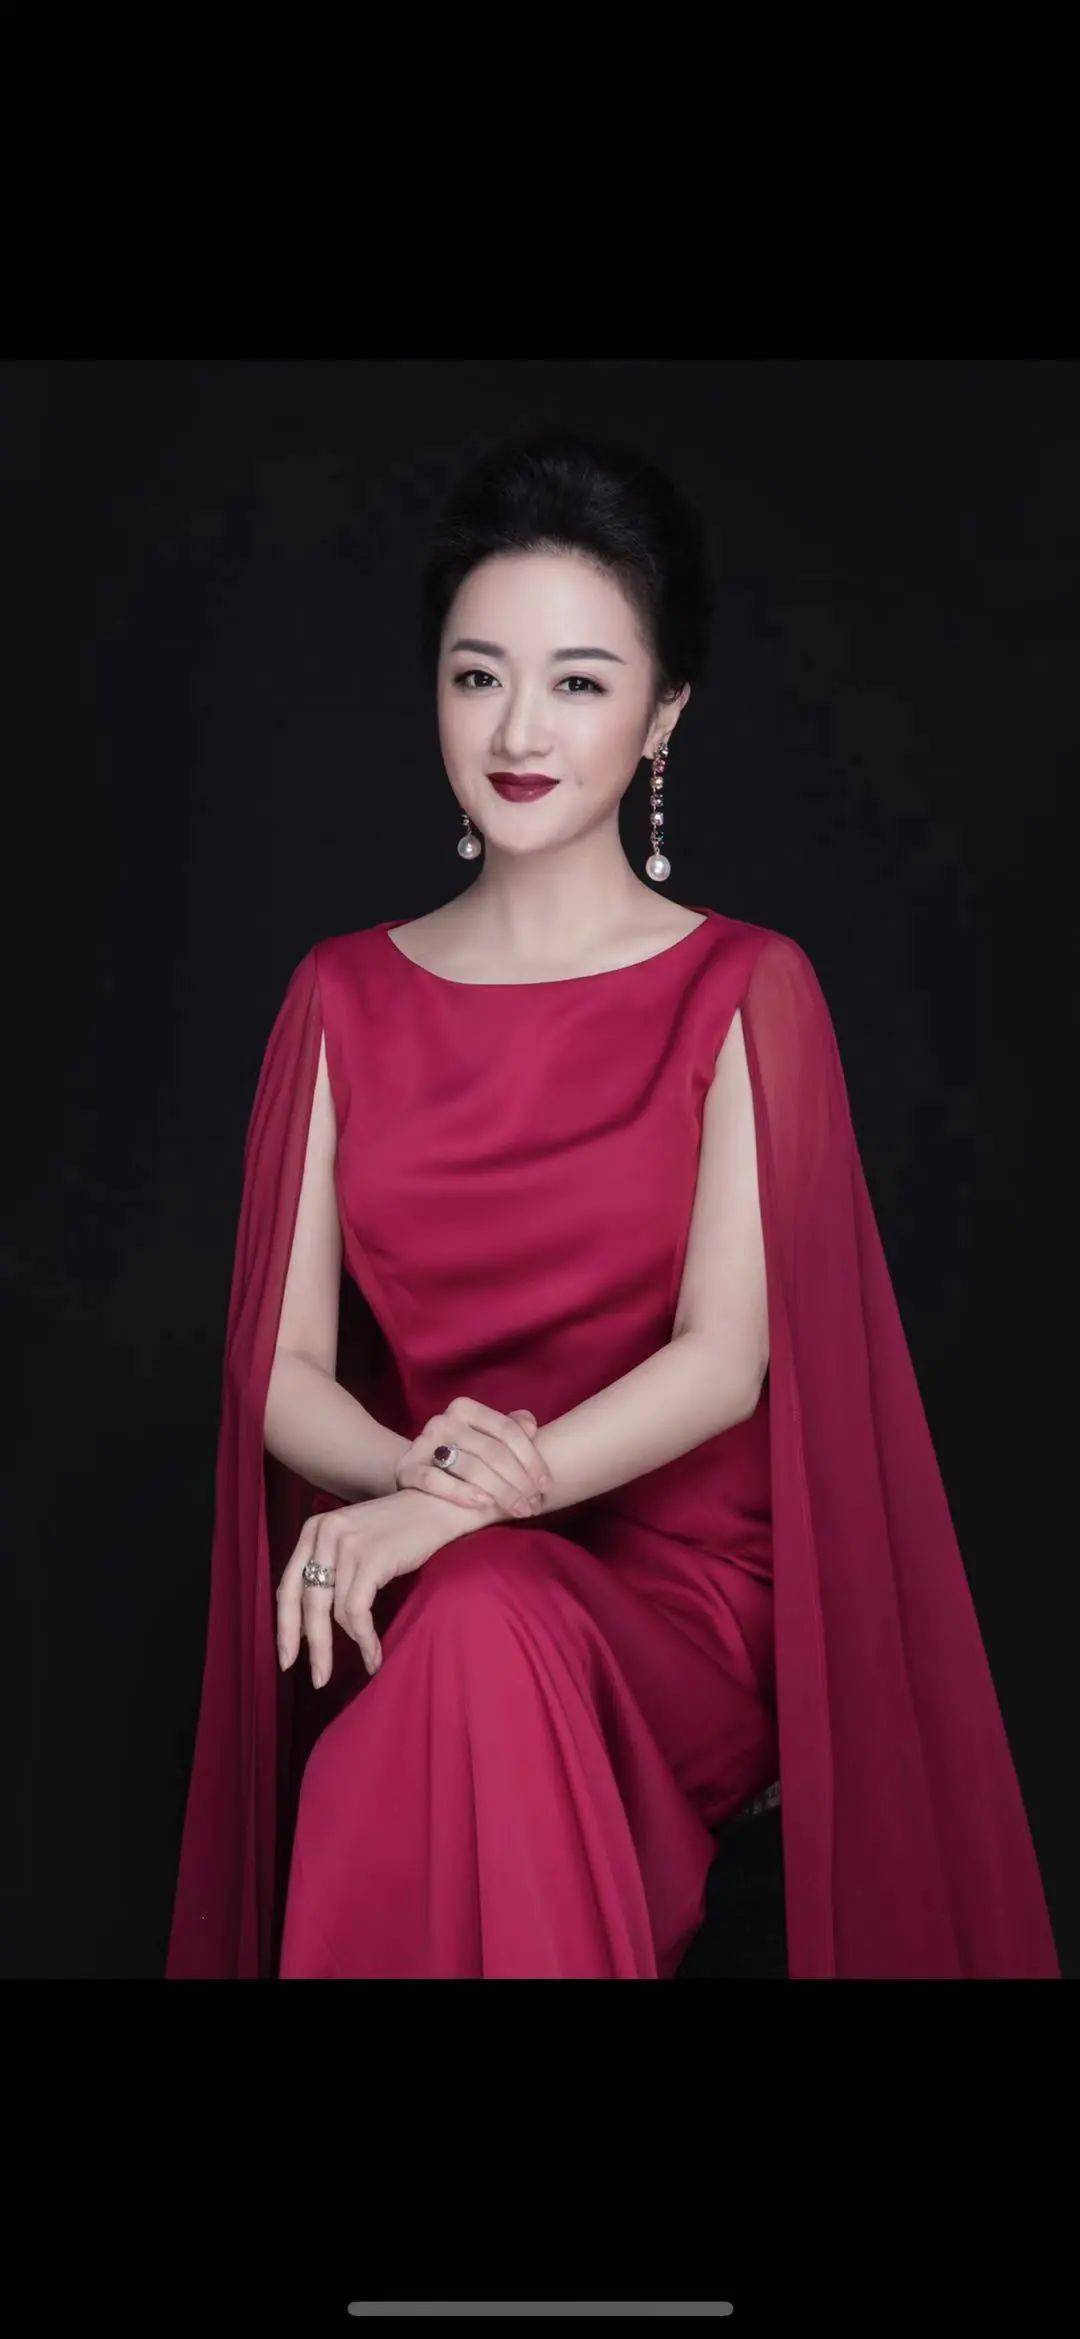 徐晓英徐晓英 女高音歌唱家,国家一级演员,上海歌剧院首席女高音